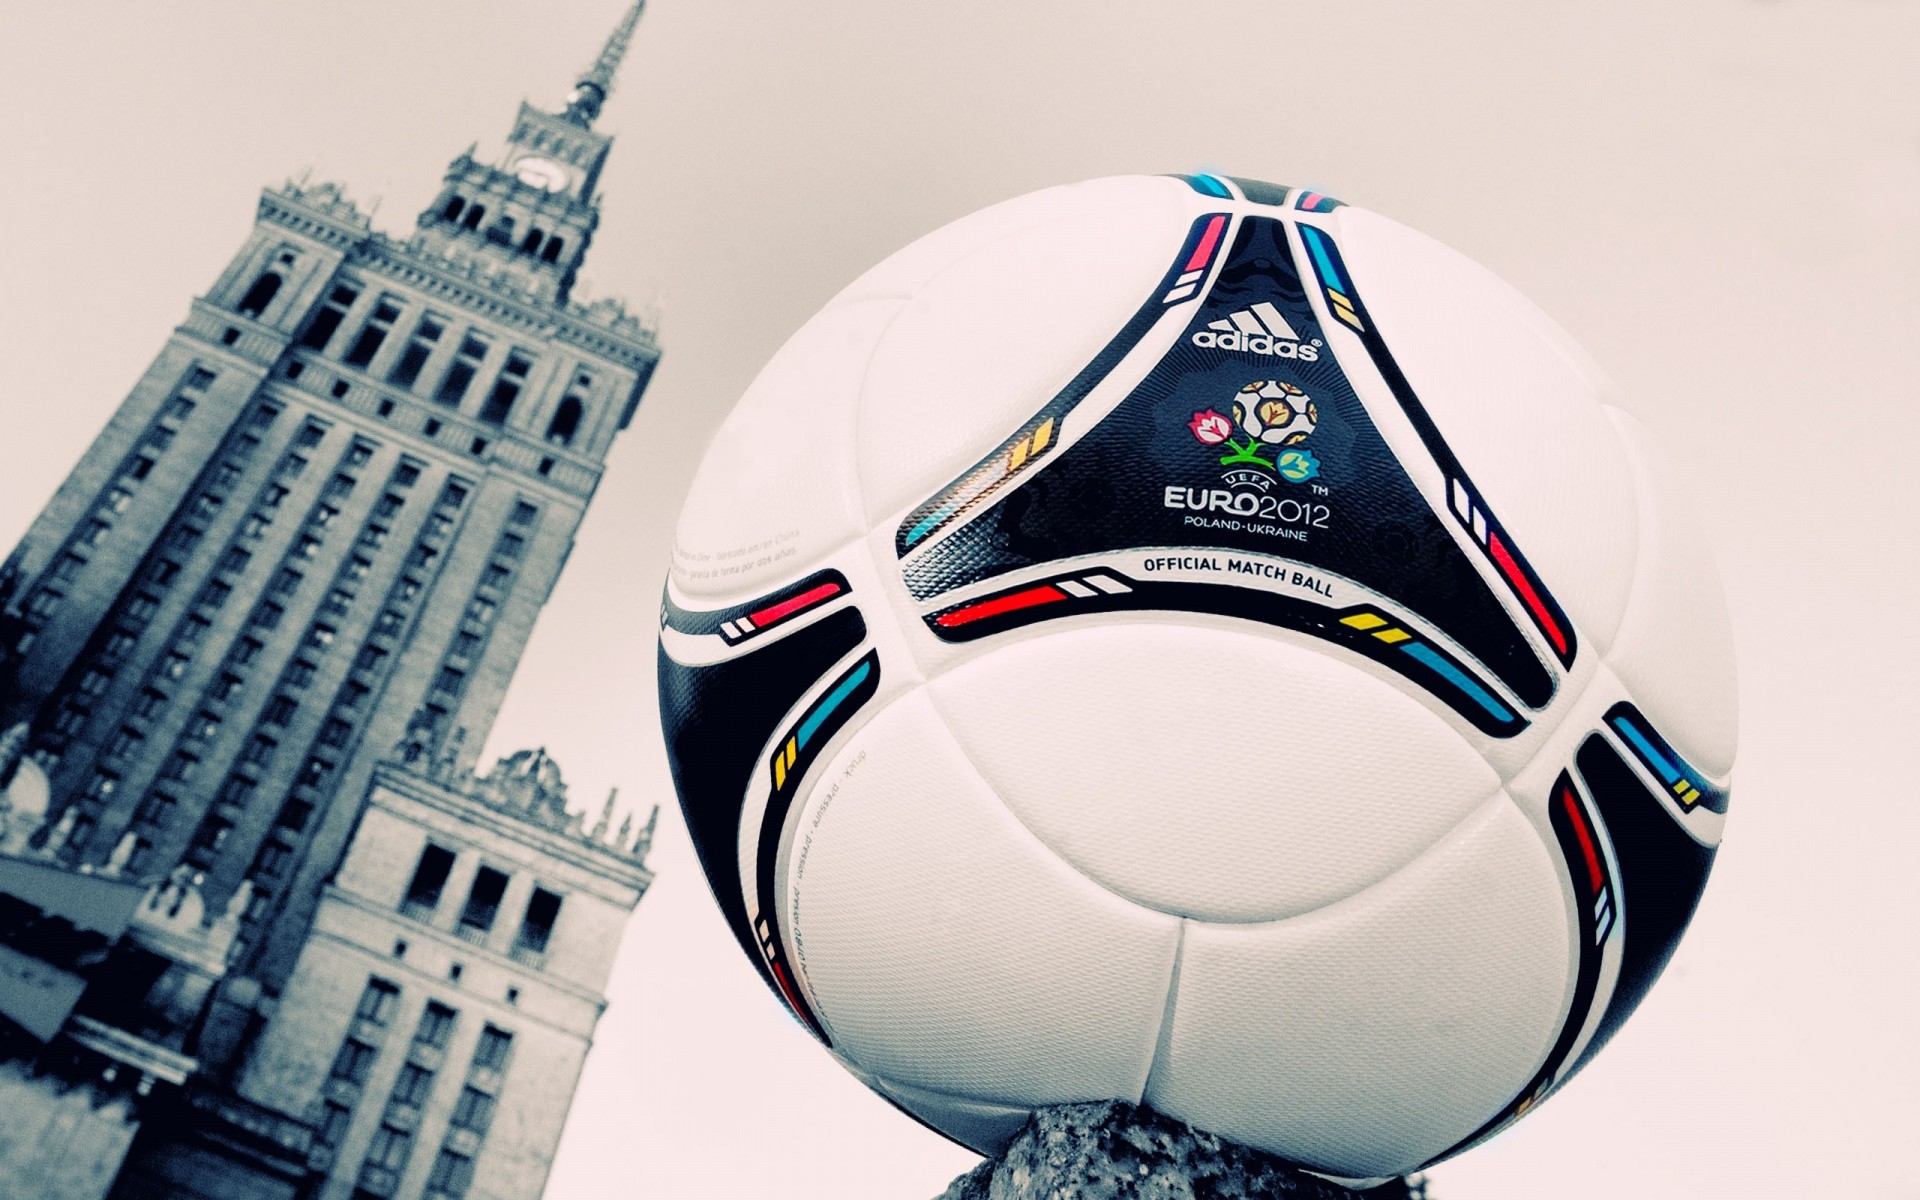 EURO 2012, Soccer Ball, Adidas Wallpaper